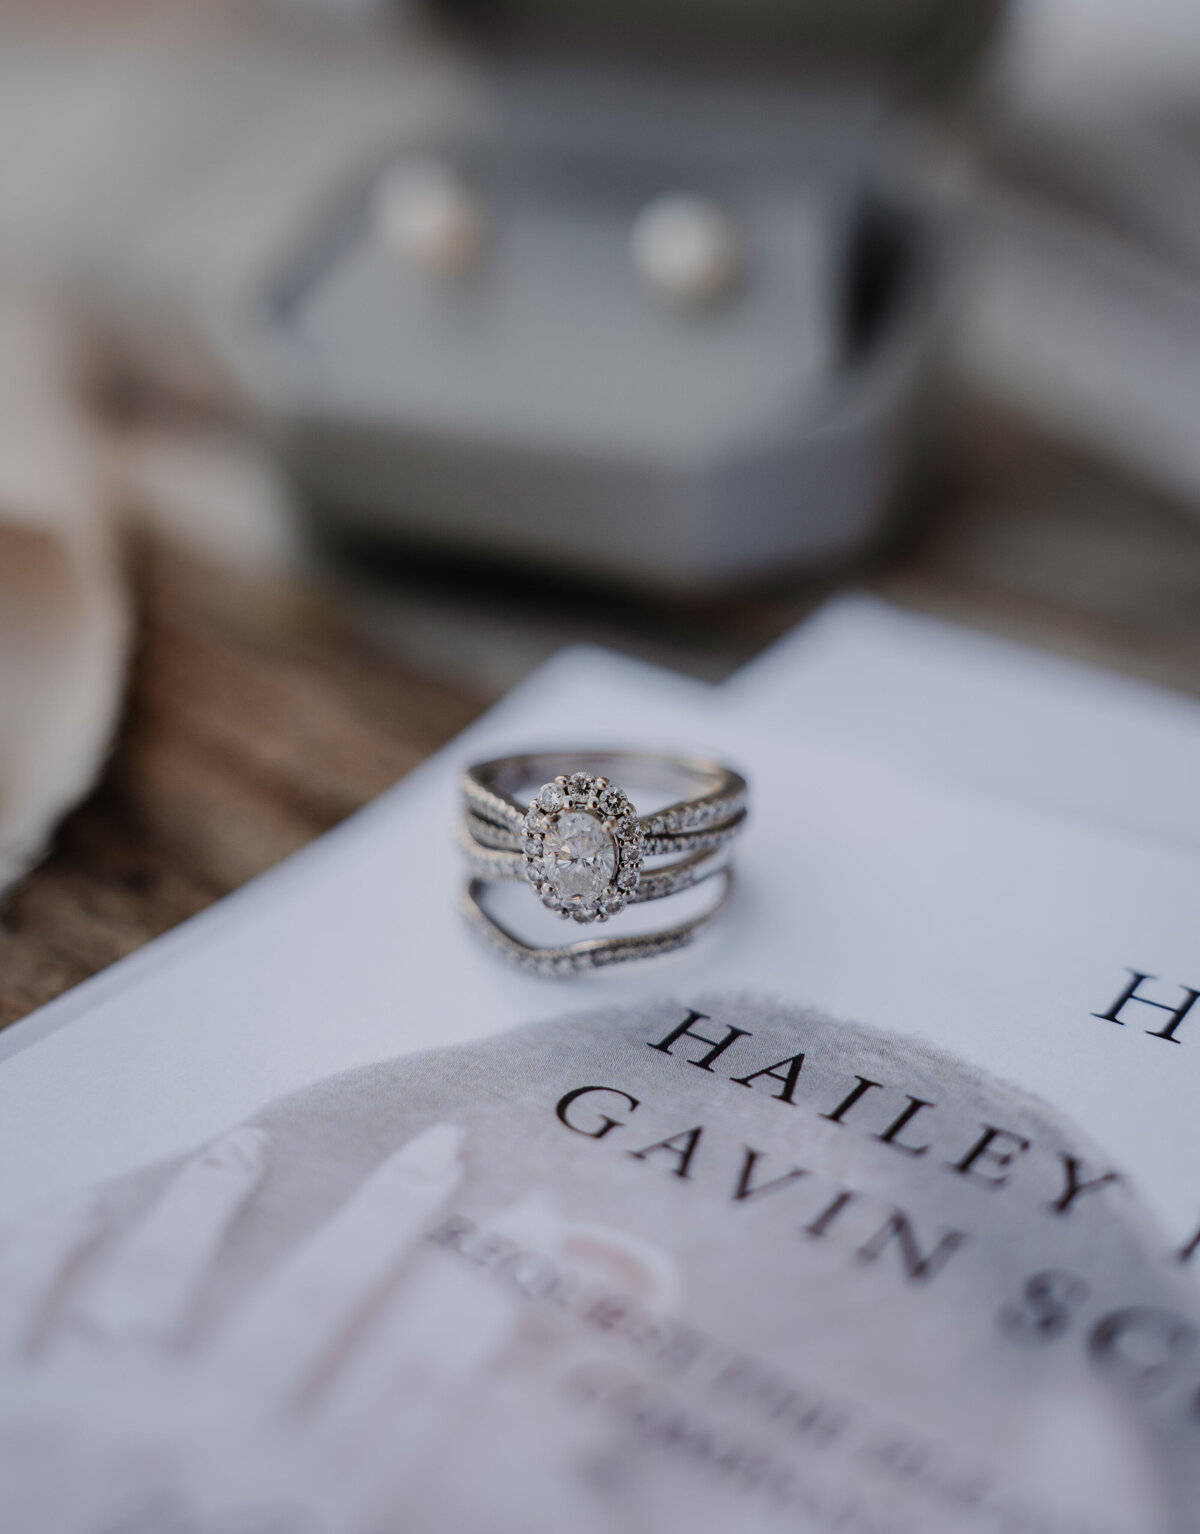 Wedding engagement ring on  white wedding invitation